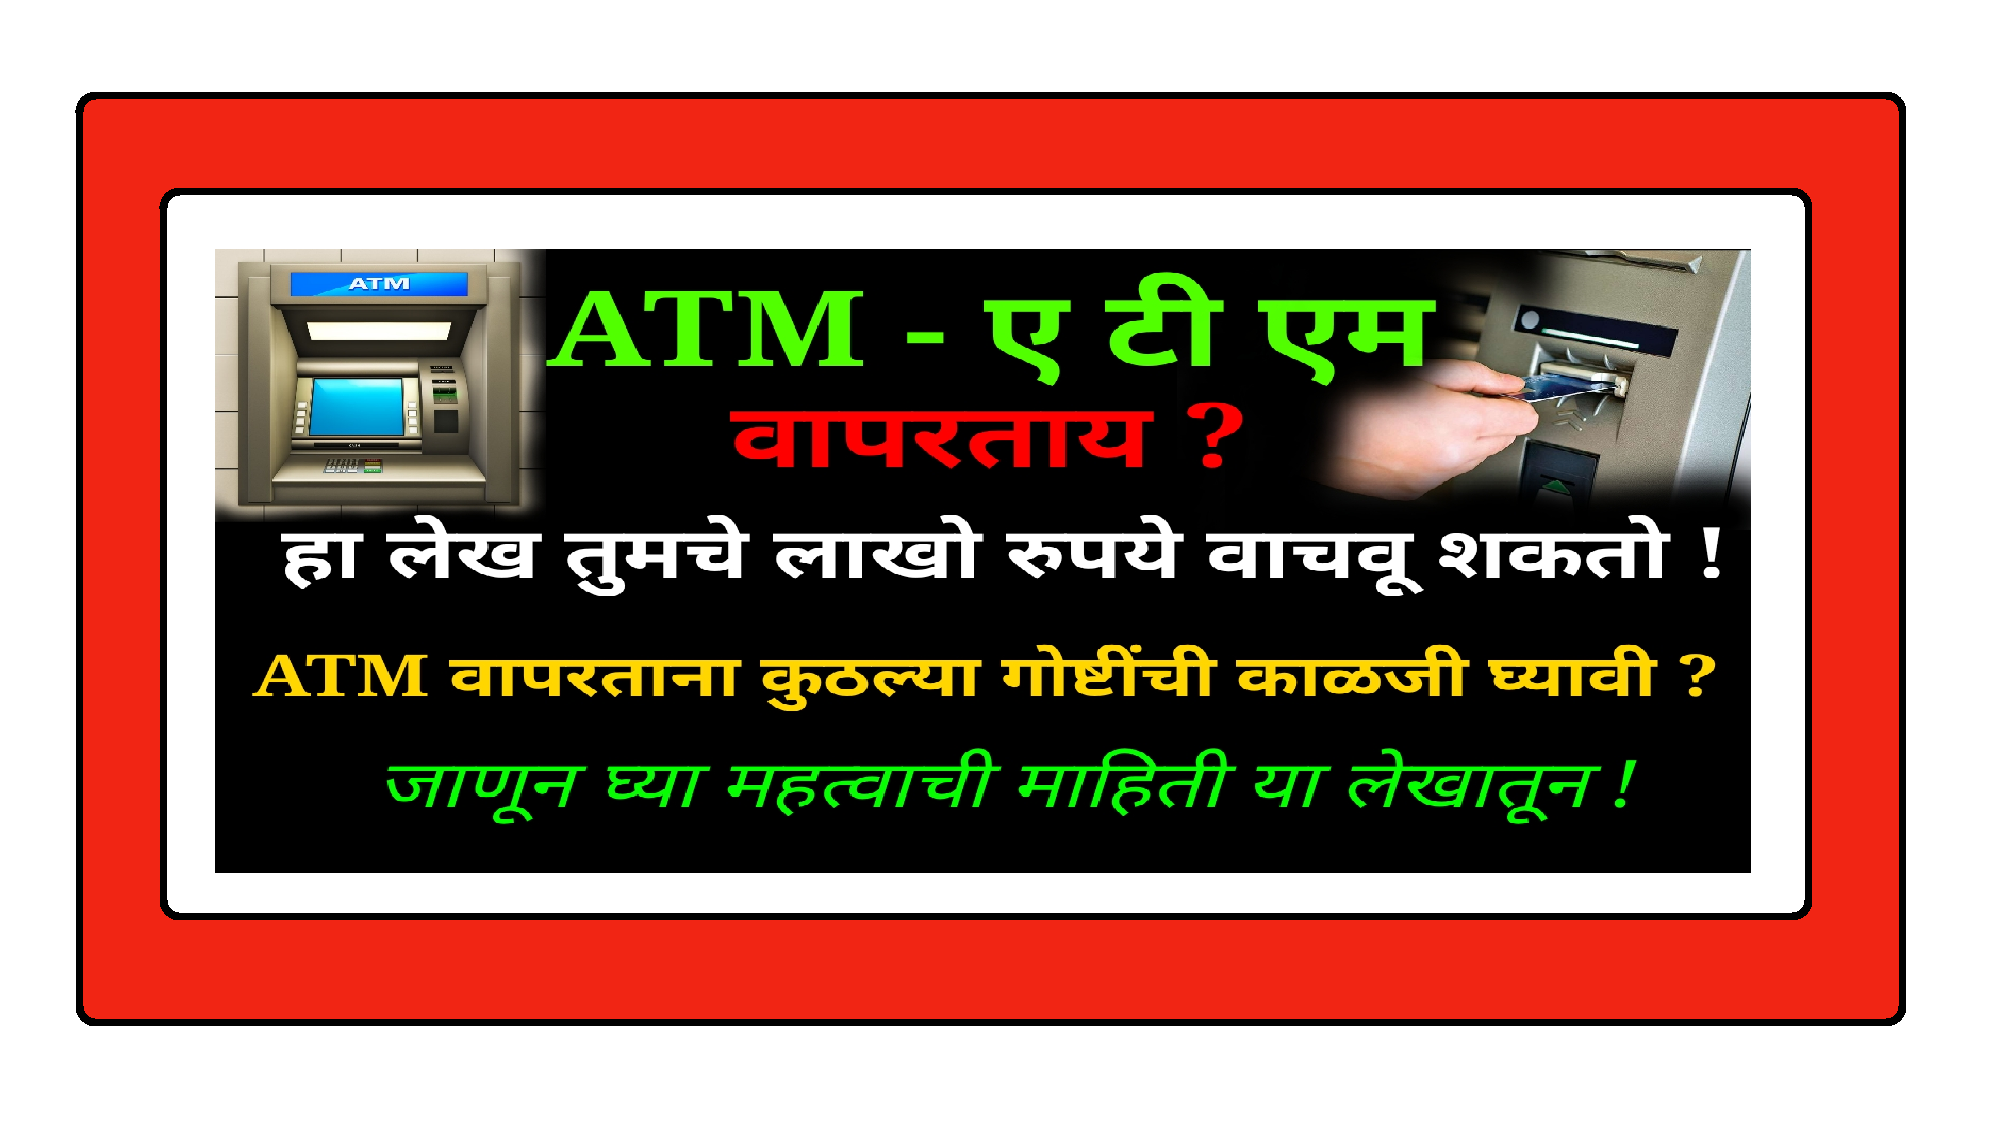 ATM द्वारे स्वतःची फसवणूक होऊ द्यायची नसेल तर हा लेख नक्की वाचा आणि इतरांना देखील माहिती पोहचवा ।। तुमचेही होऊ शकते लाखोंचे नुकसान !